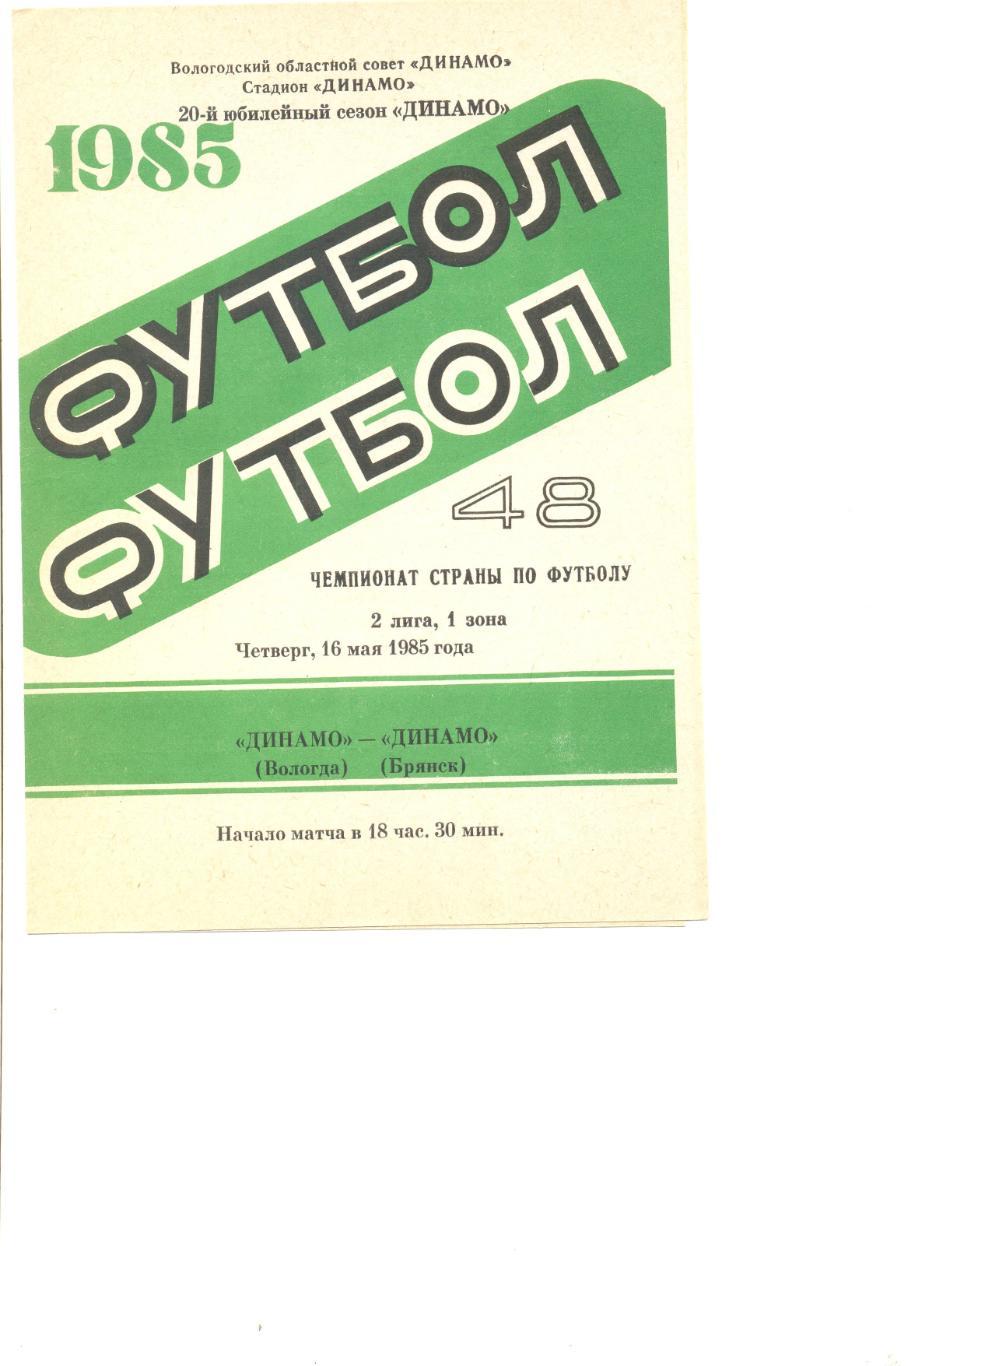 Динамо Вологда - Динамо Брянск 16.05.1985 г.